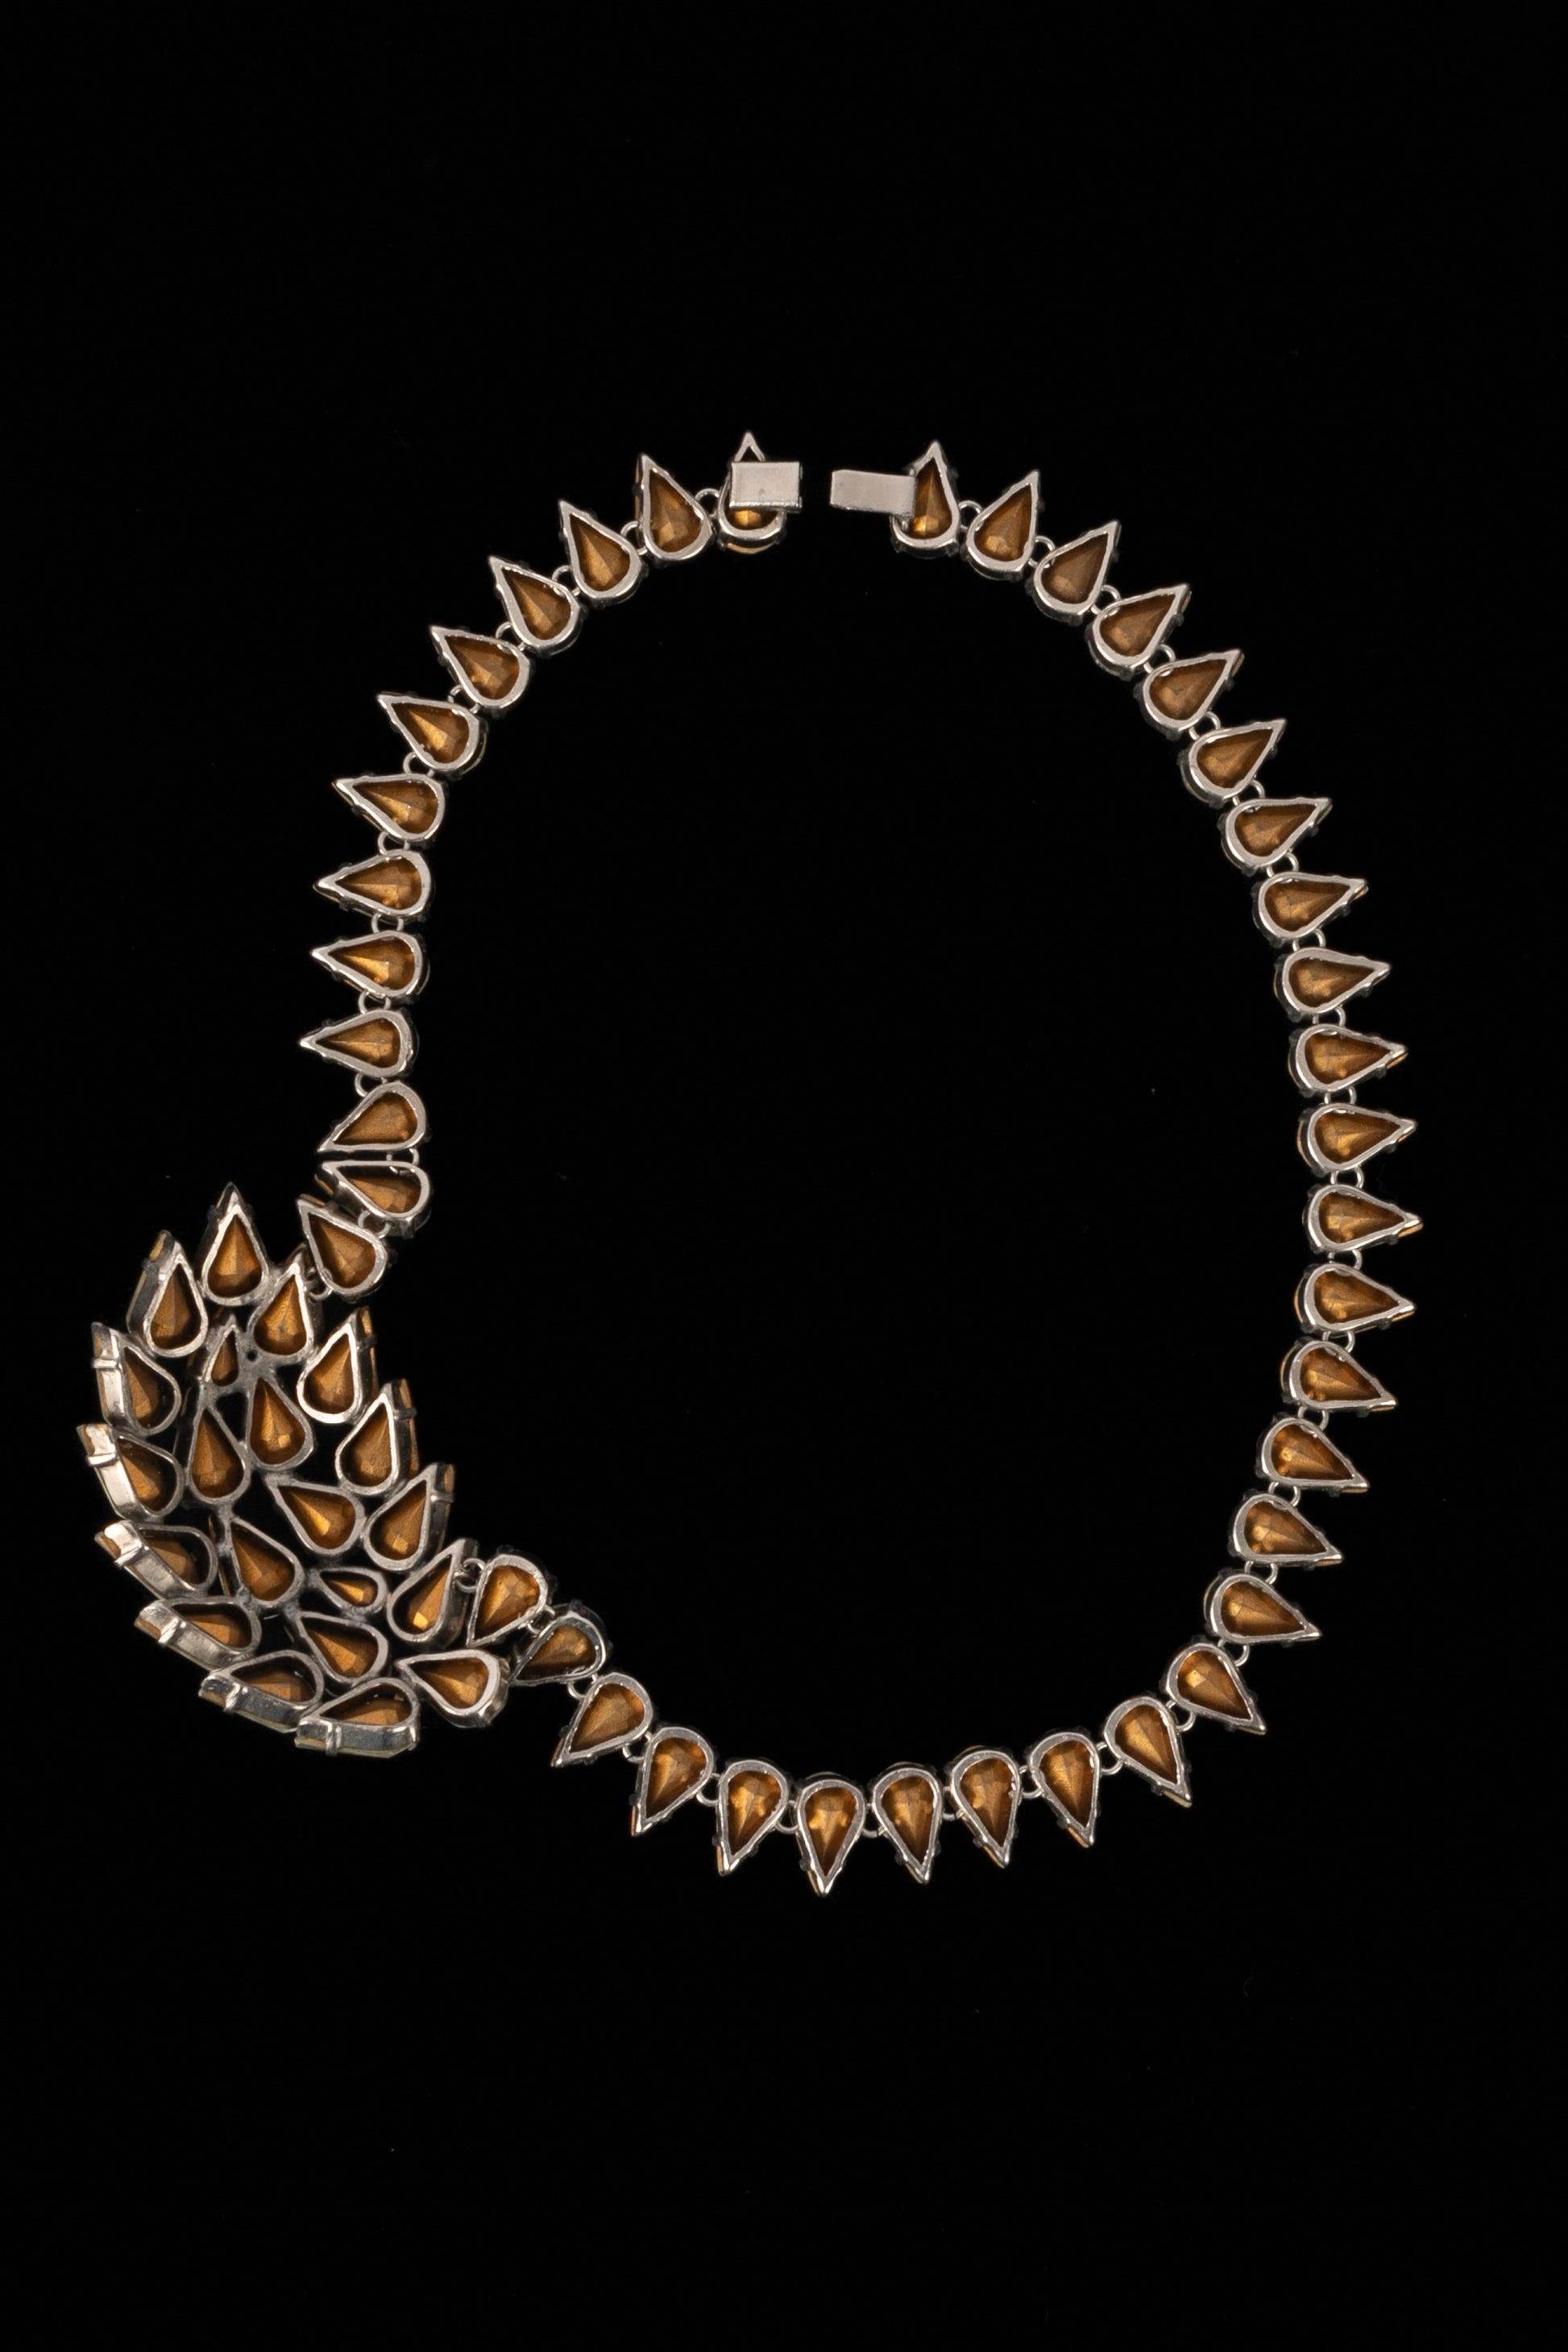 Unknwon - Kurze Halskette aus silbernem Metall mit Strasssteinen. Nicht unterzeichnet.

Zusätzliche Informationen: 
Zustand: Sehr guter Zustand
Abmessungen: Länge: 38 cm
 
Sellers Referenz: BC77